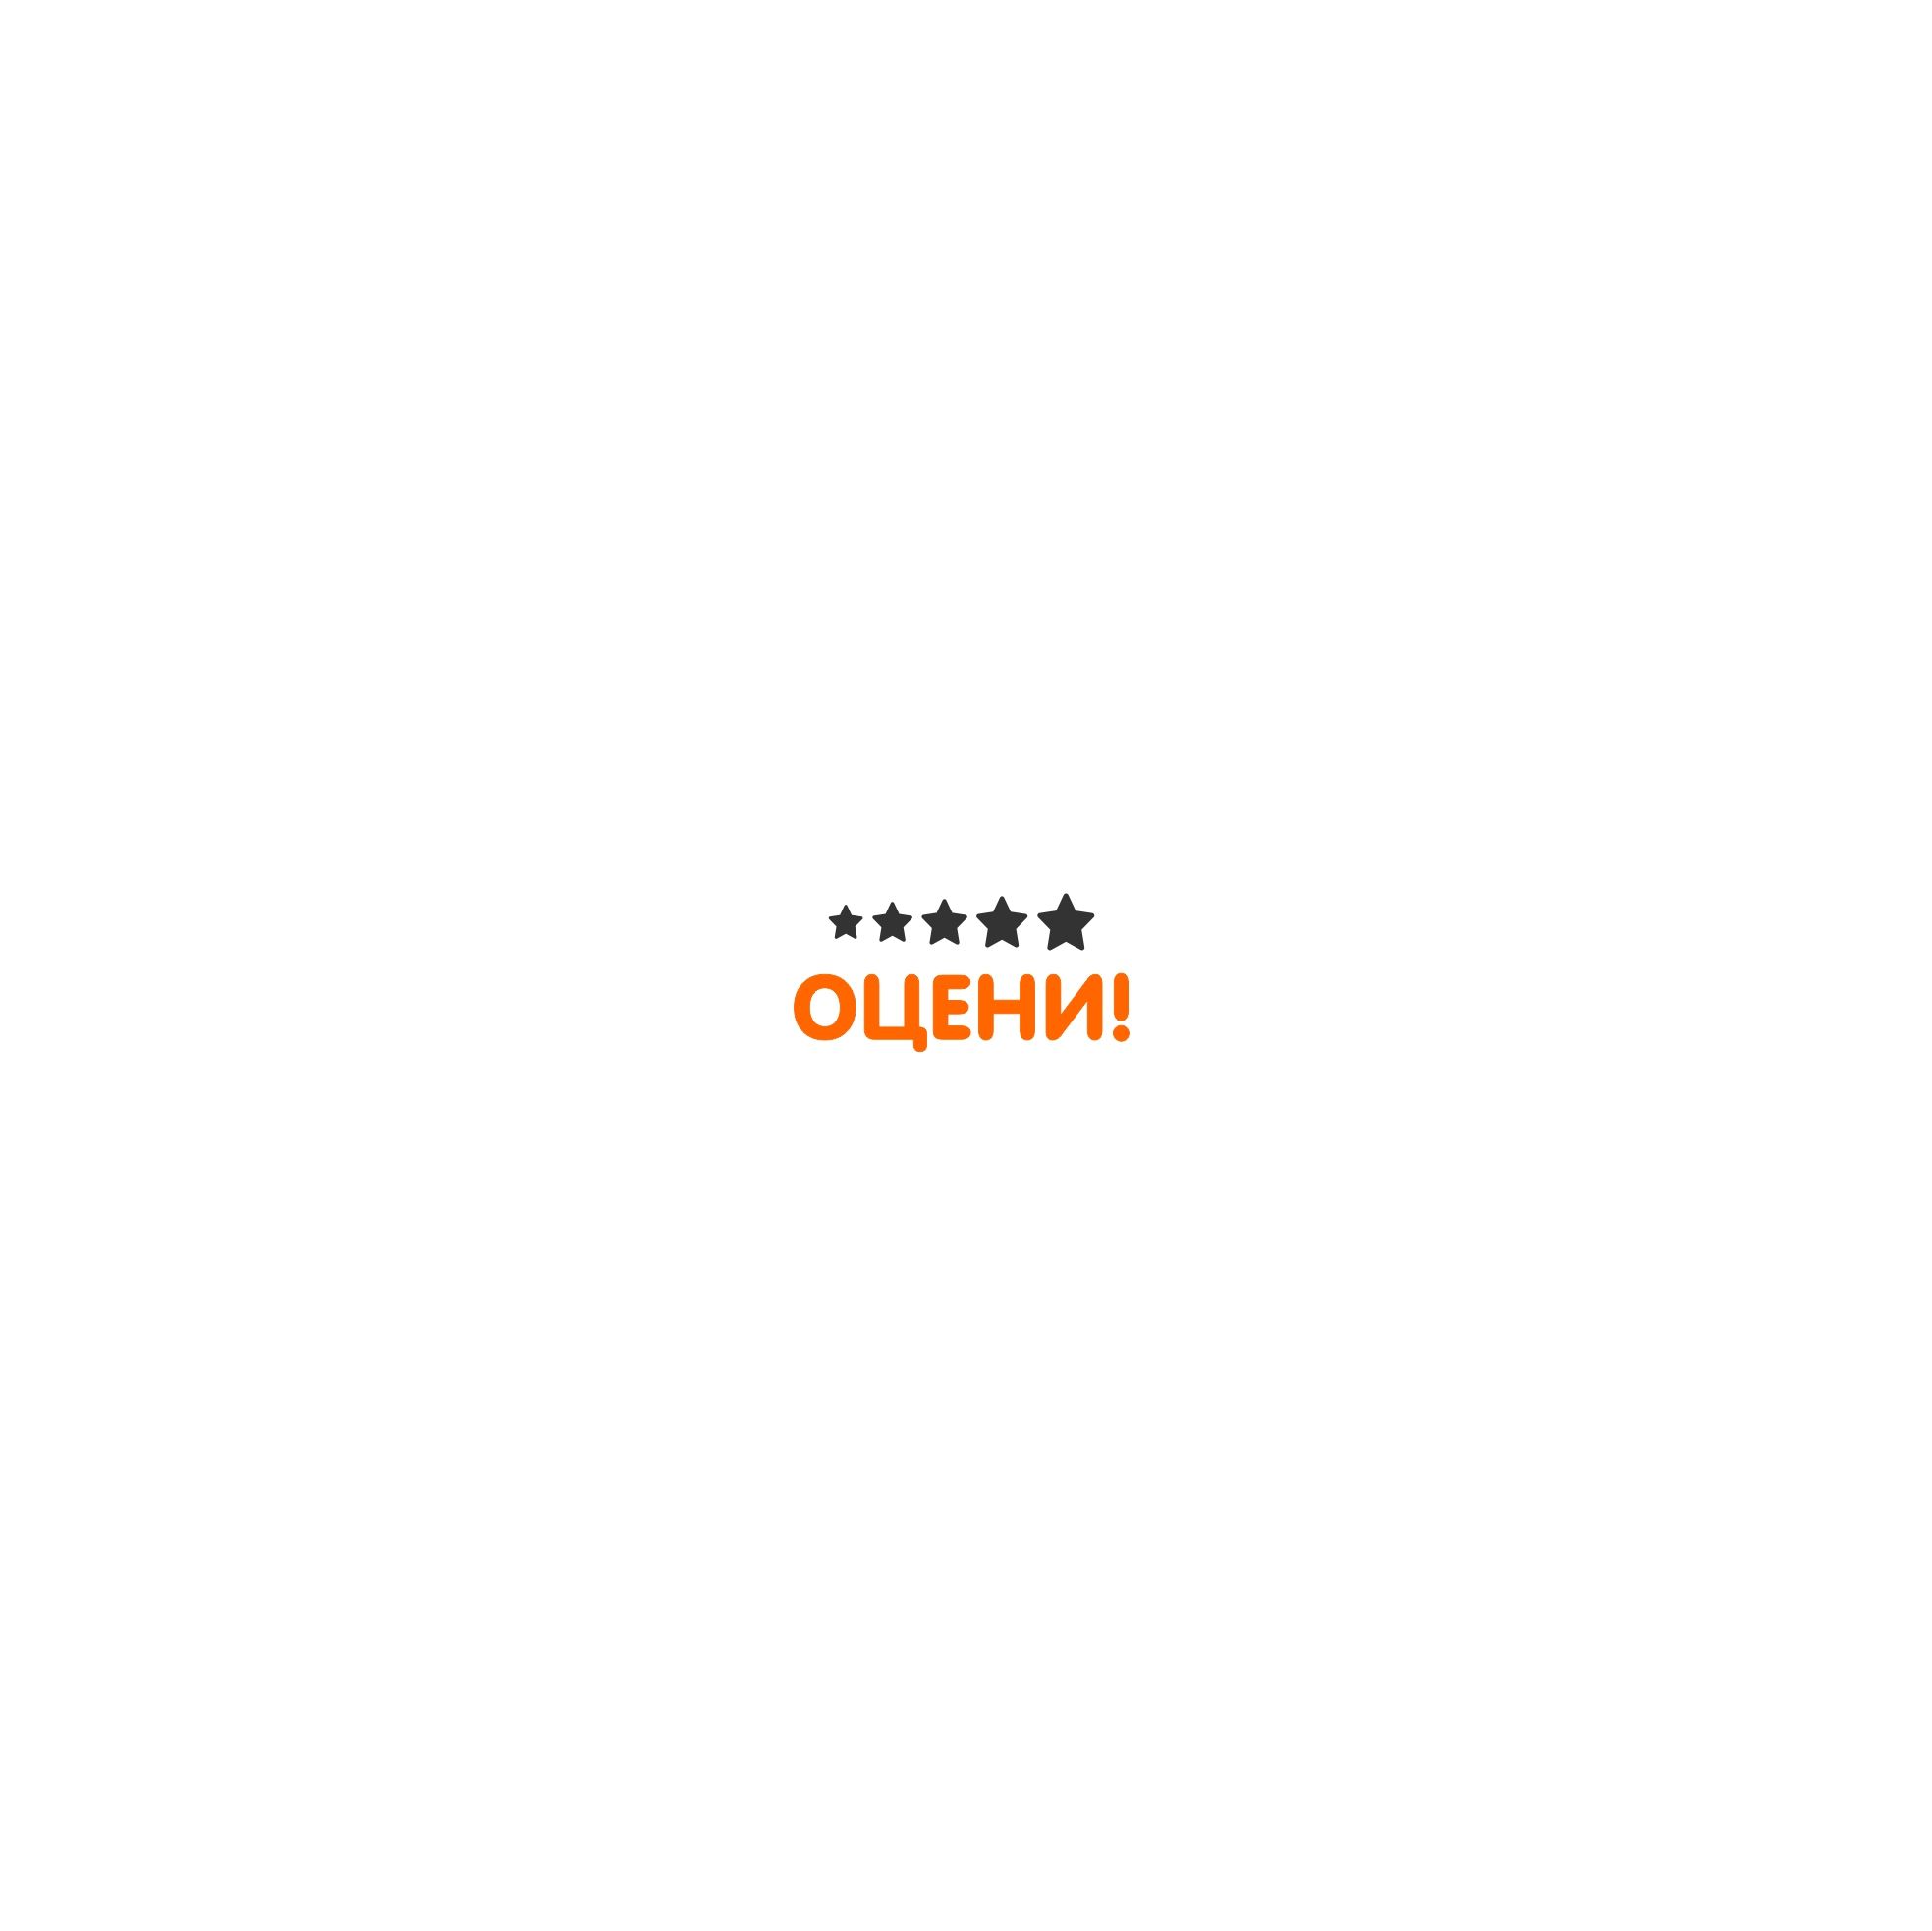 Логотип для Оцени!, Проект «Оцени!»  - дизайнер trojni